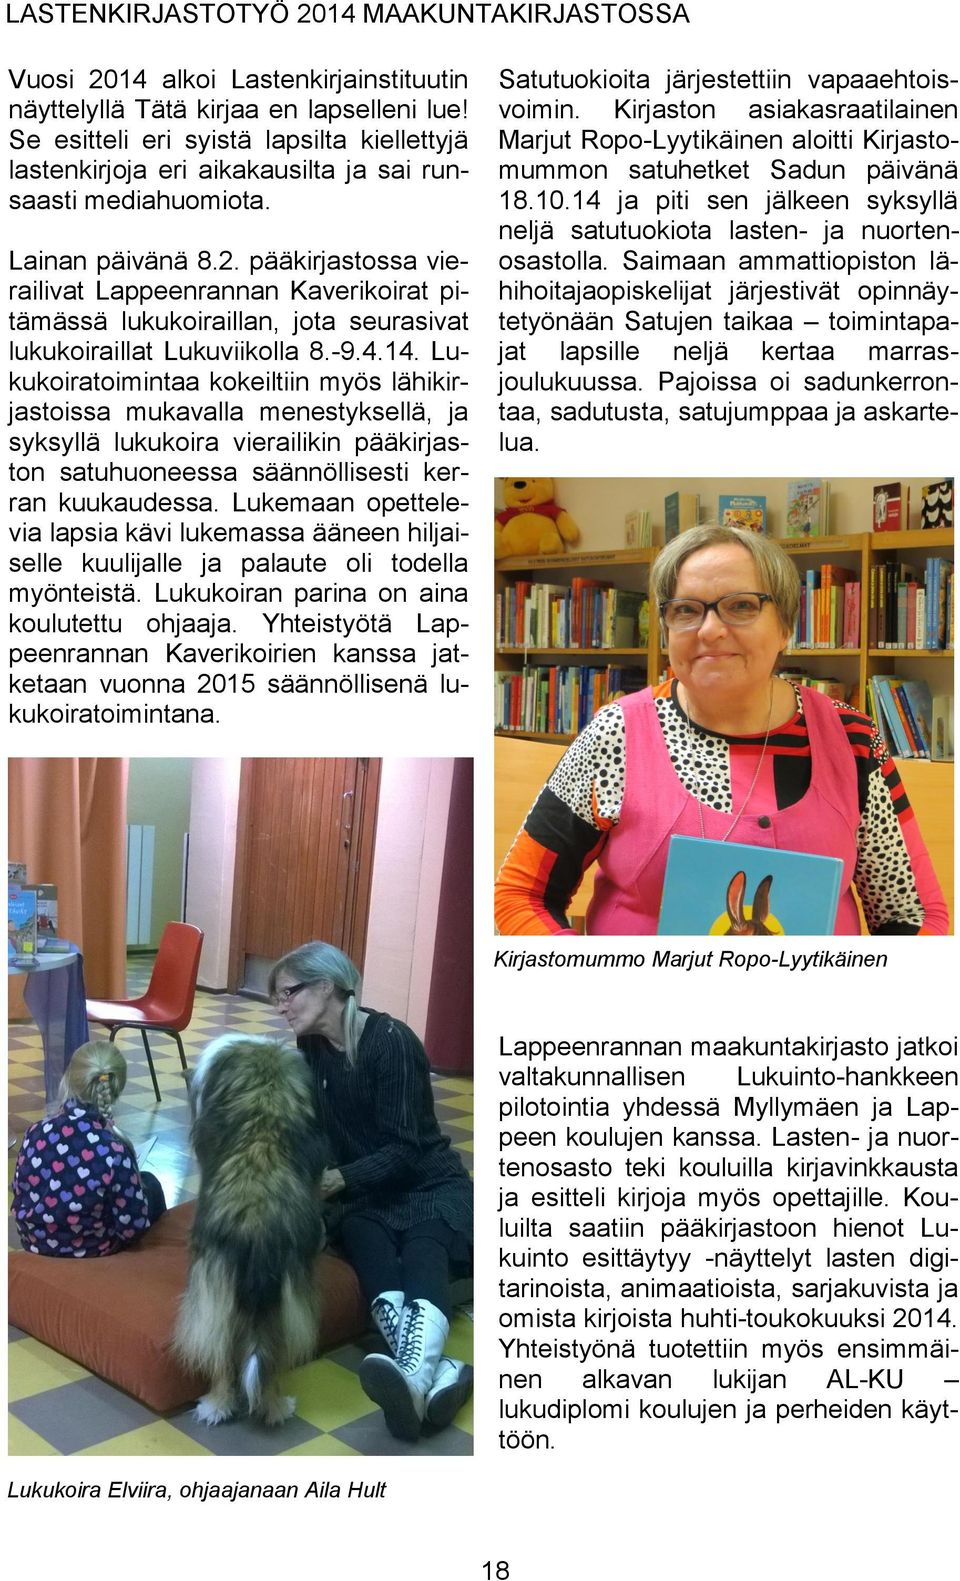 pääkirjastossa vierailivat Lappeenrannan Kaverikoirat pitämässä lukukoiraillan, jota seurasivat lukukoiraillat Lukuviikolla 8.-9.4.14.